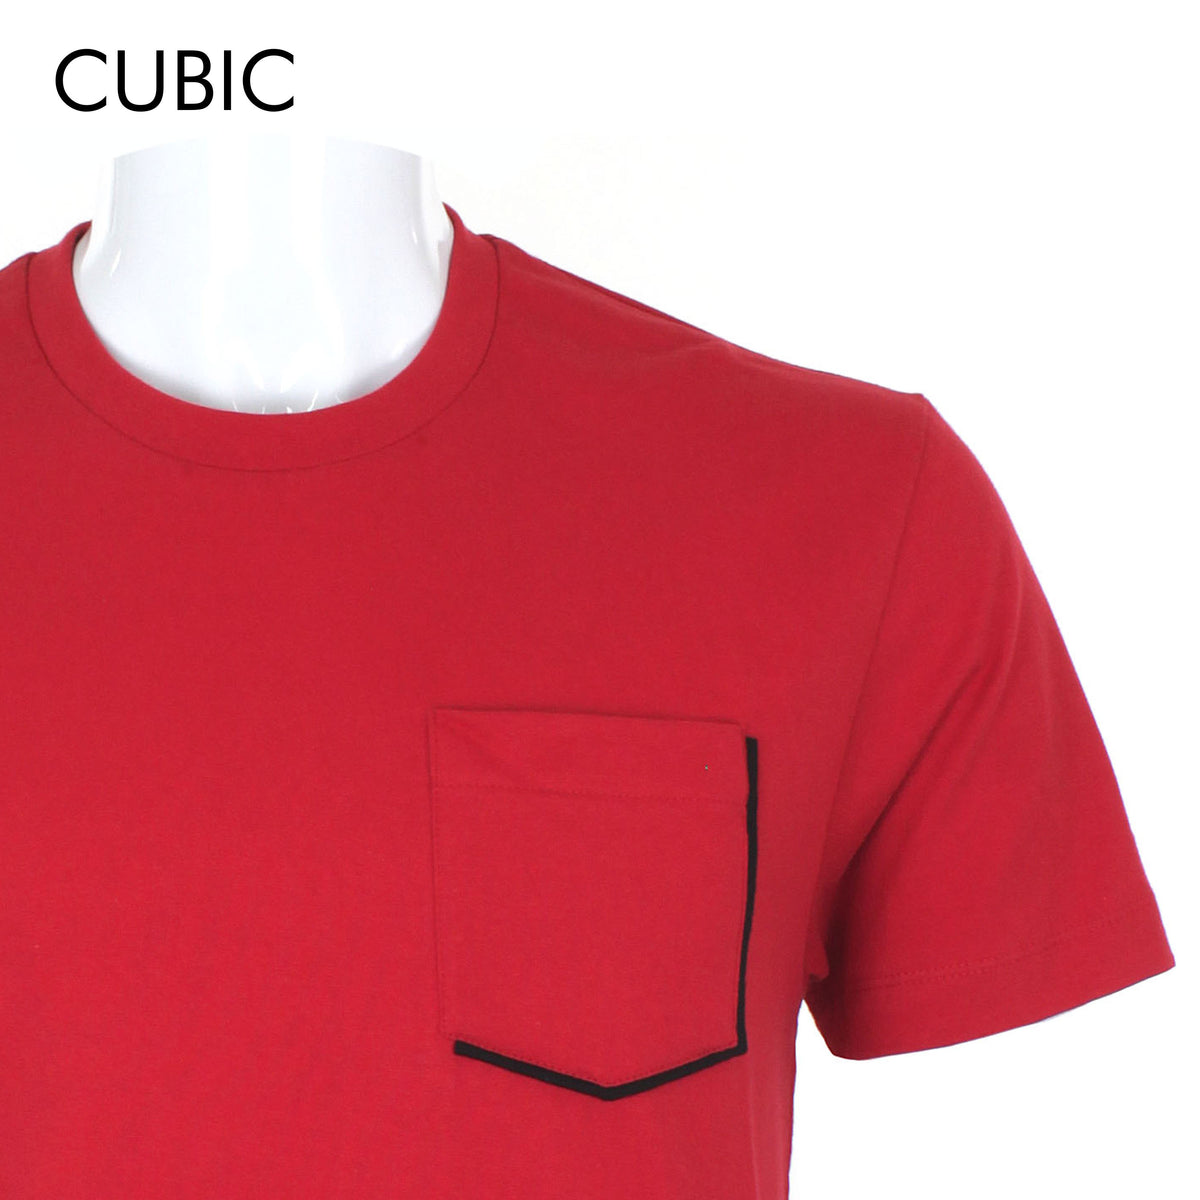 Cubic Men Round Neck Tees T-shirt Plain Shirt Top Top for Men - CMJ2239R